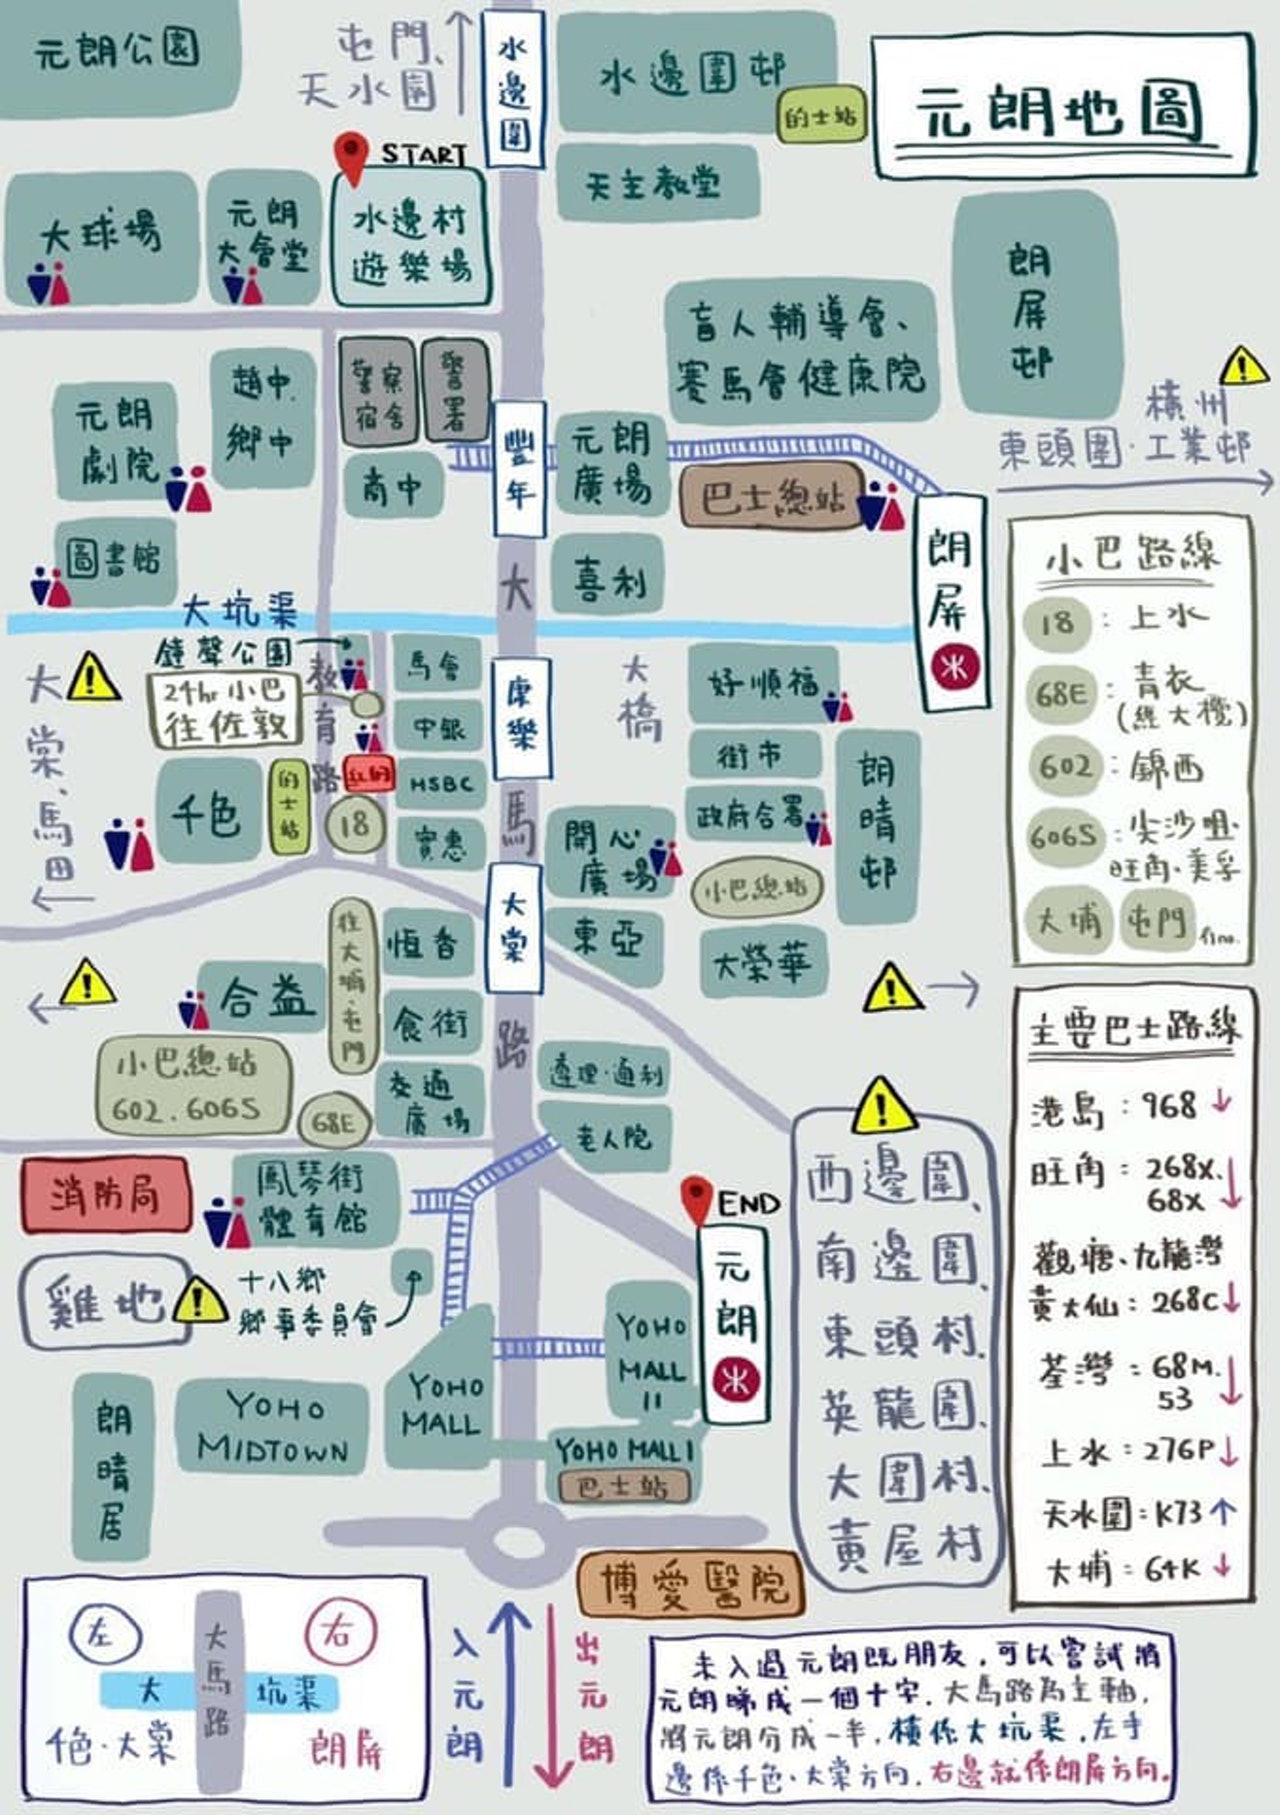 有网民自制元朗地图，列出游行邻近区域的高风险地点和一旦冲突发生后的逃生路线。-图取自香港01-